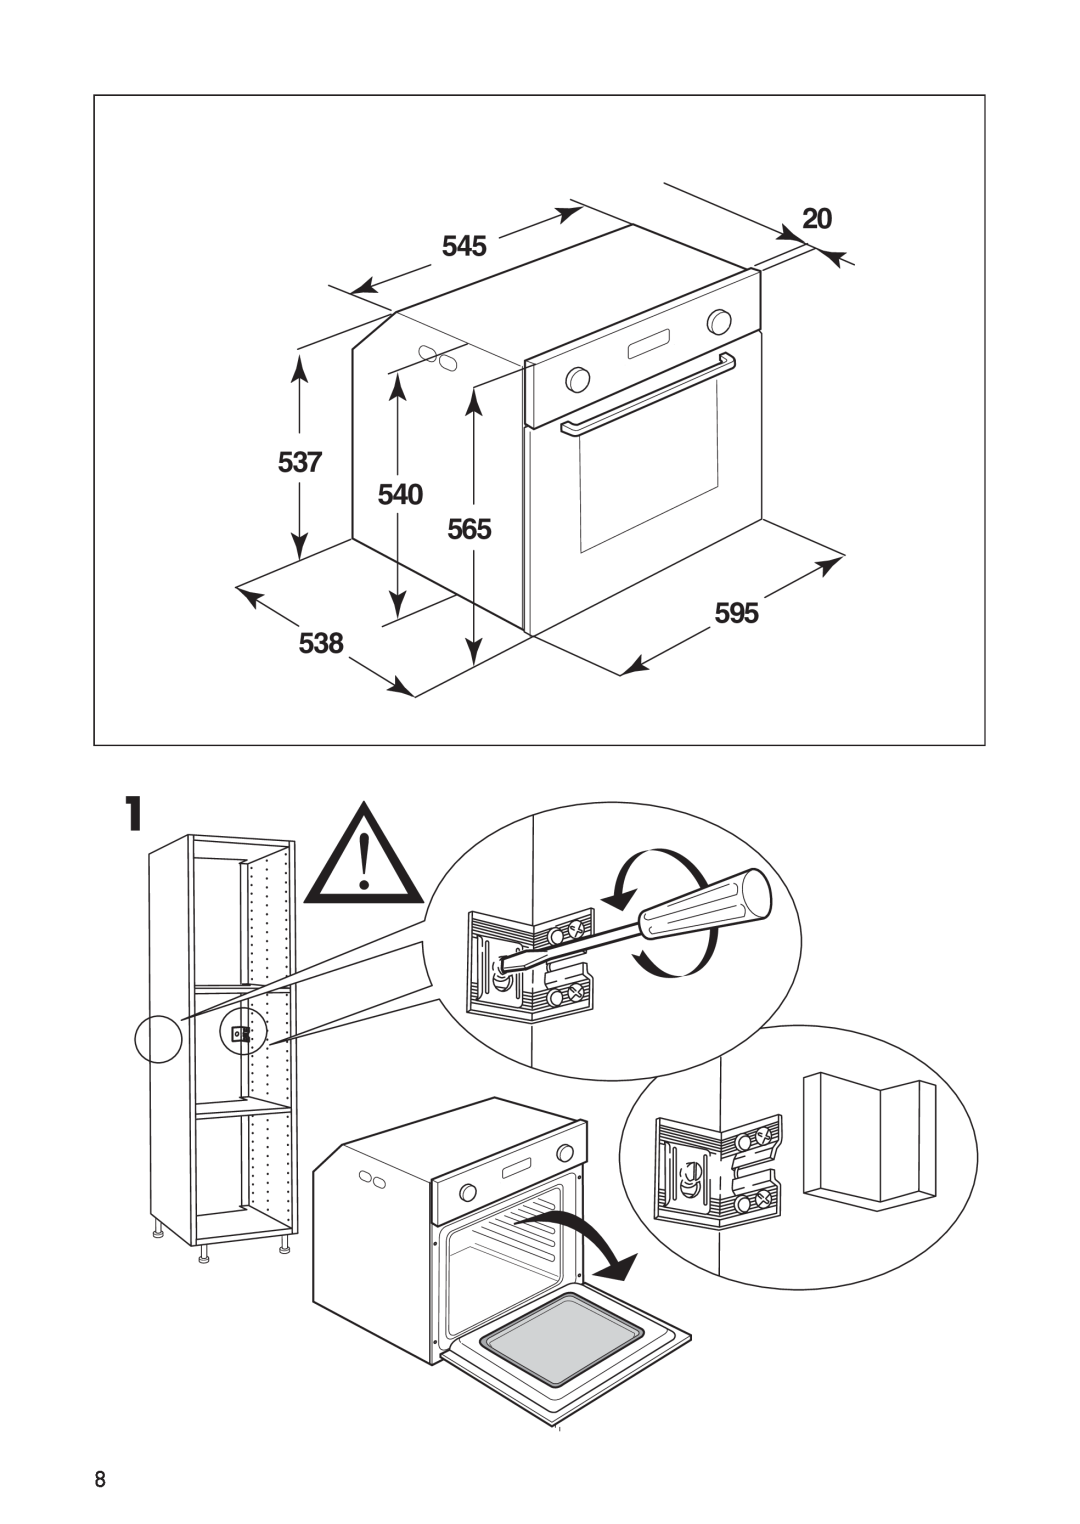 IKEA OV9 manual 545 